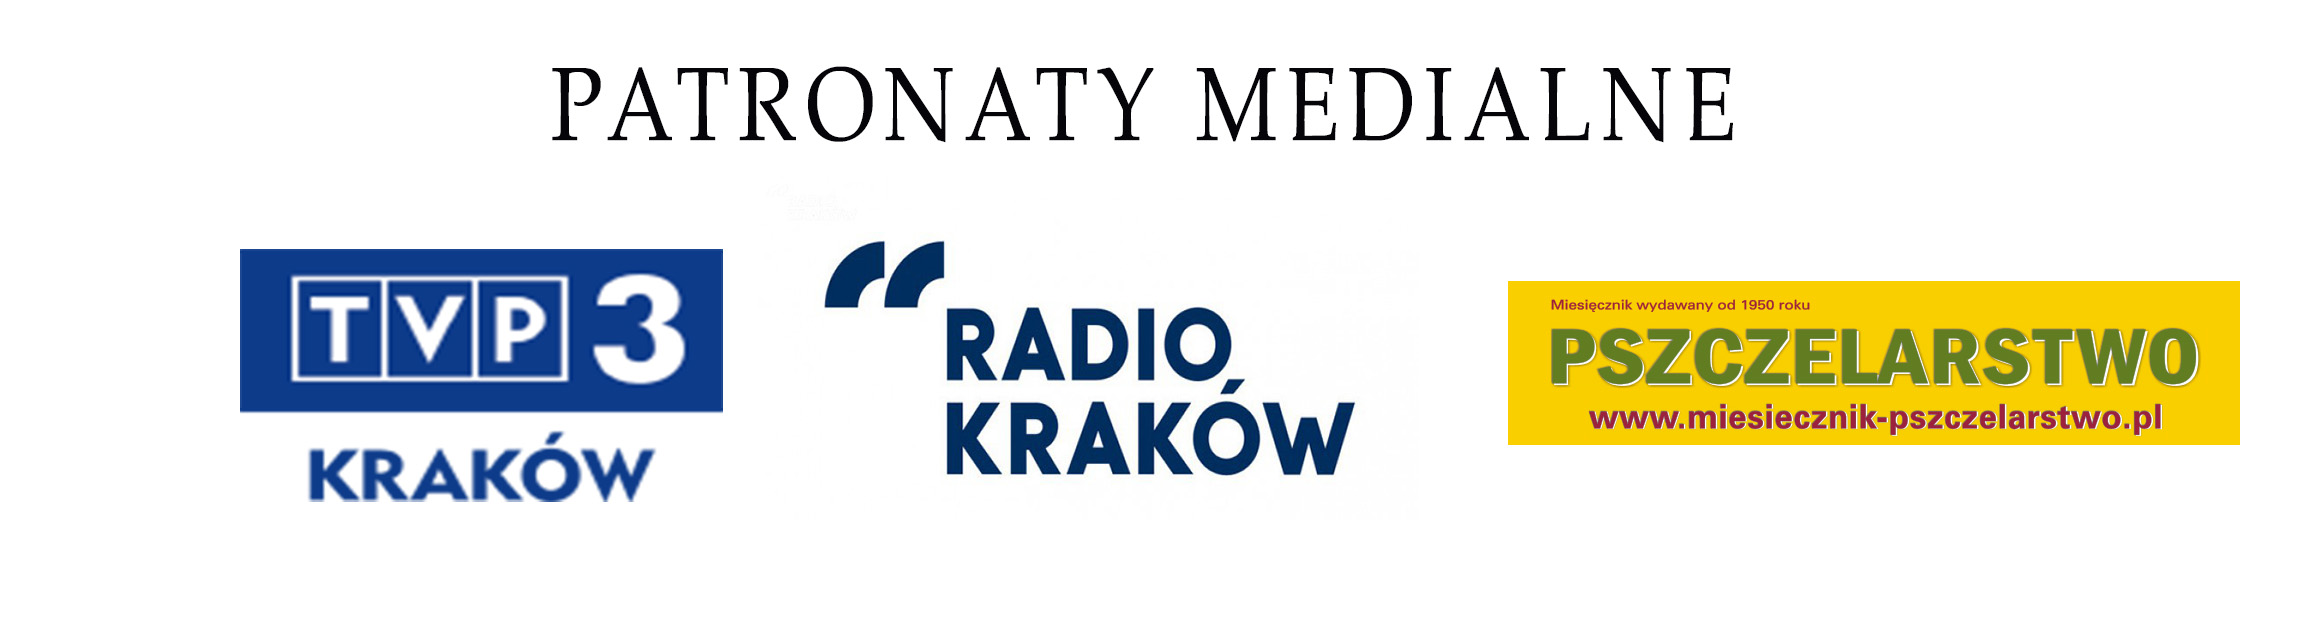 patronaty medialne krakowskie miodobranie